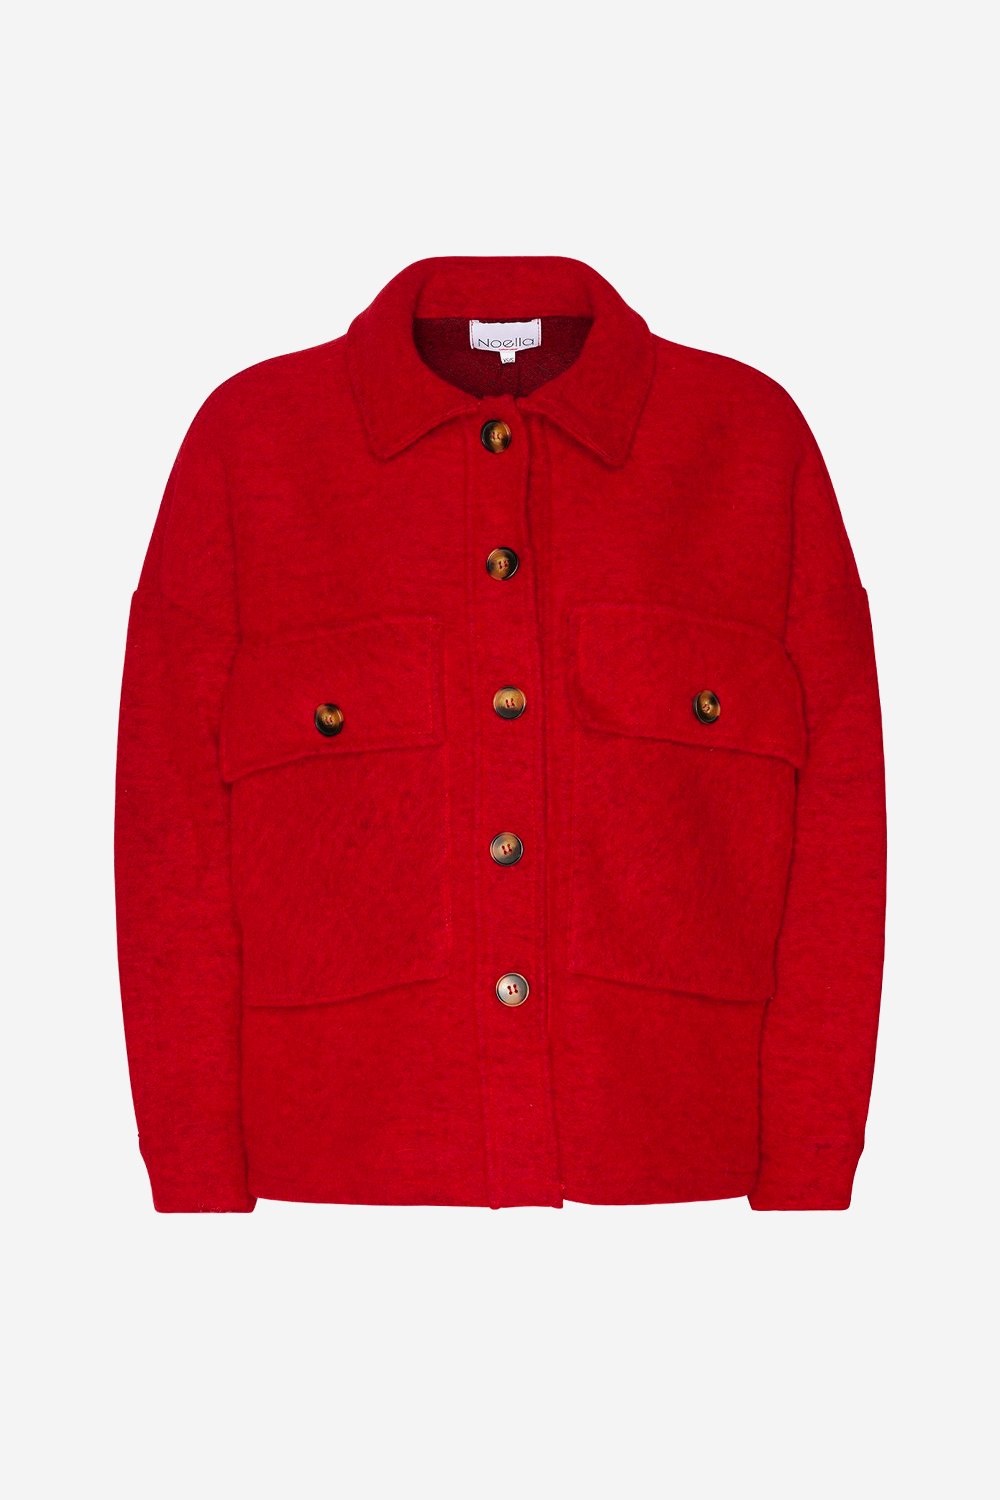 Celine Jacket Wool Deep Red